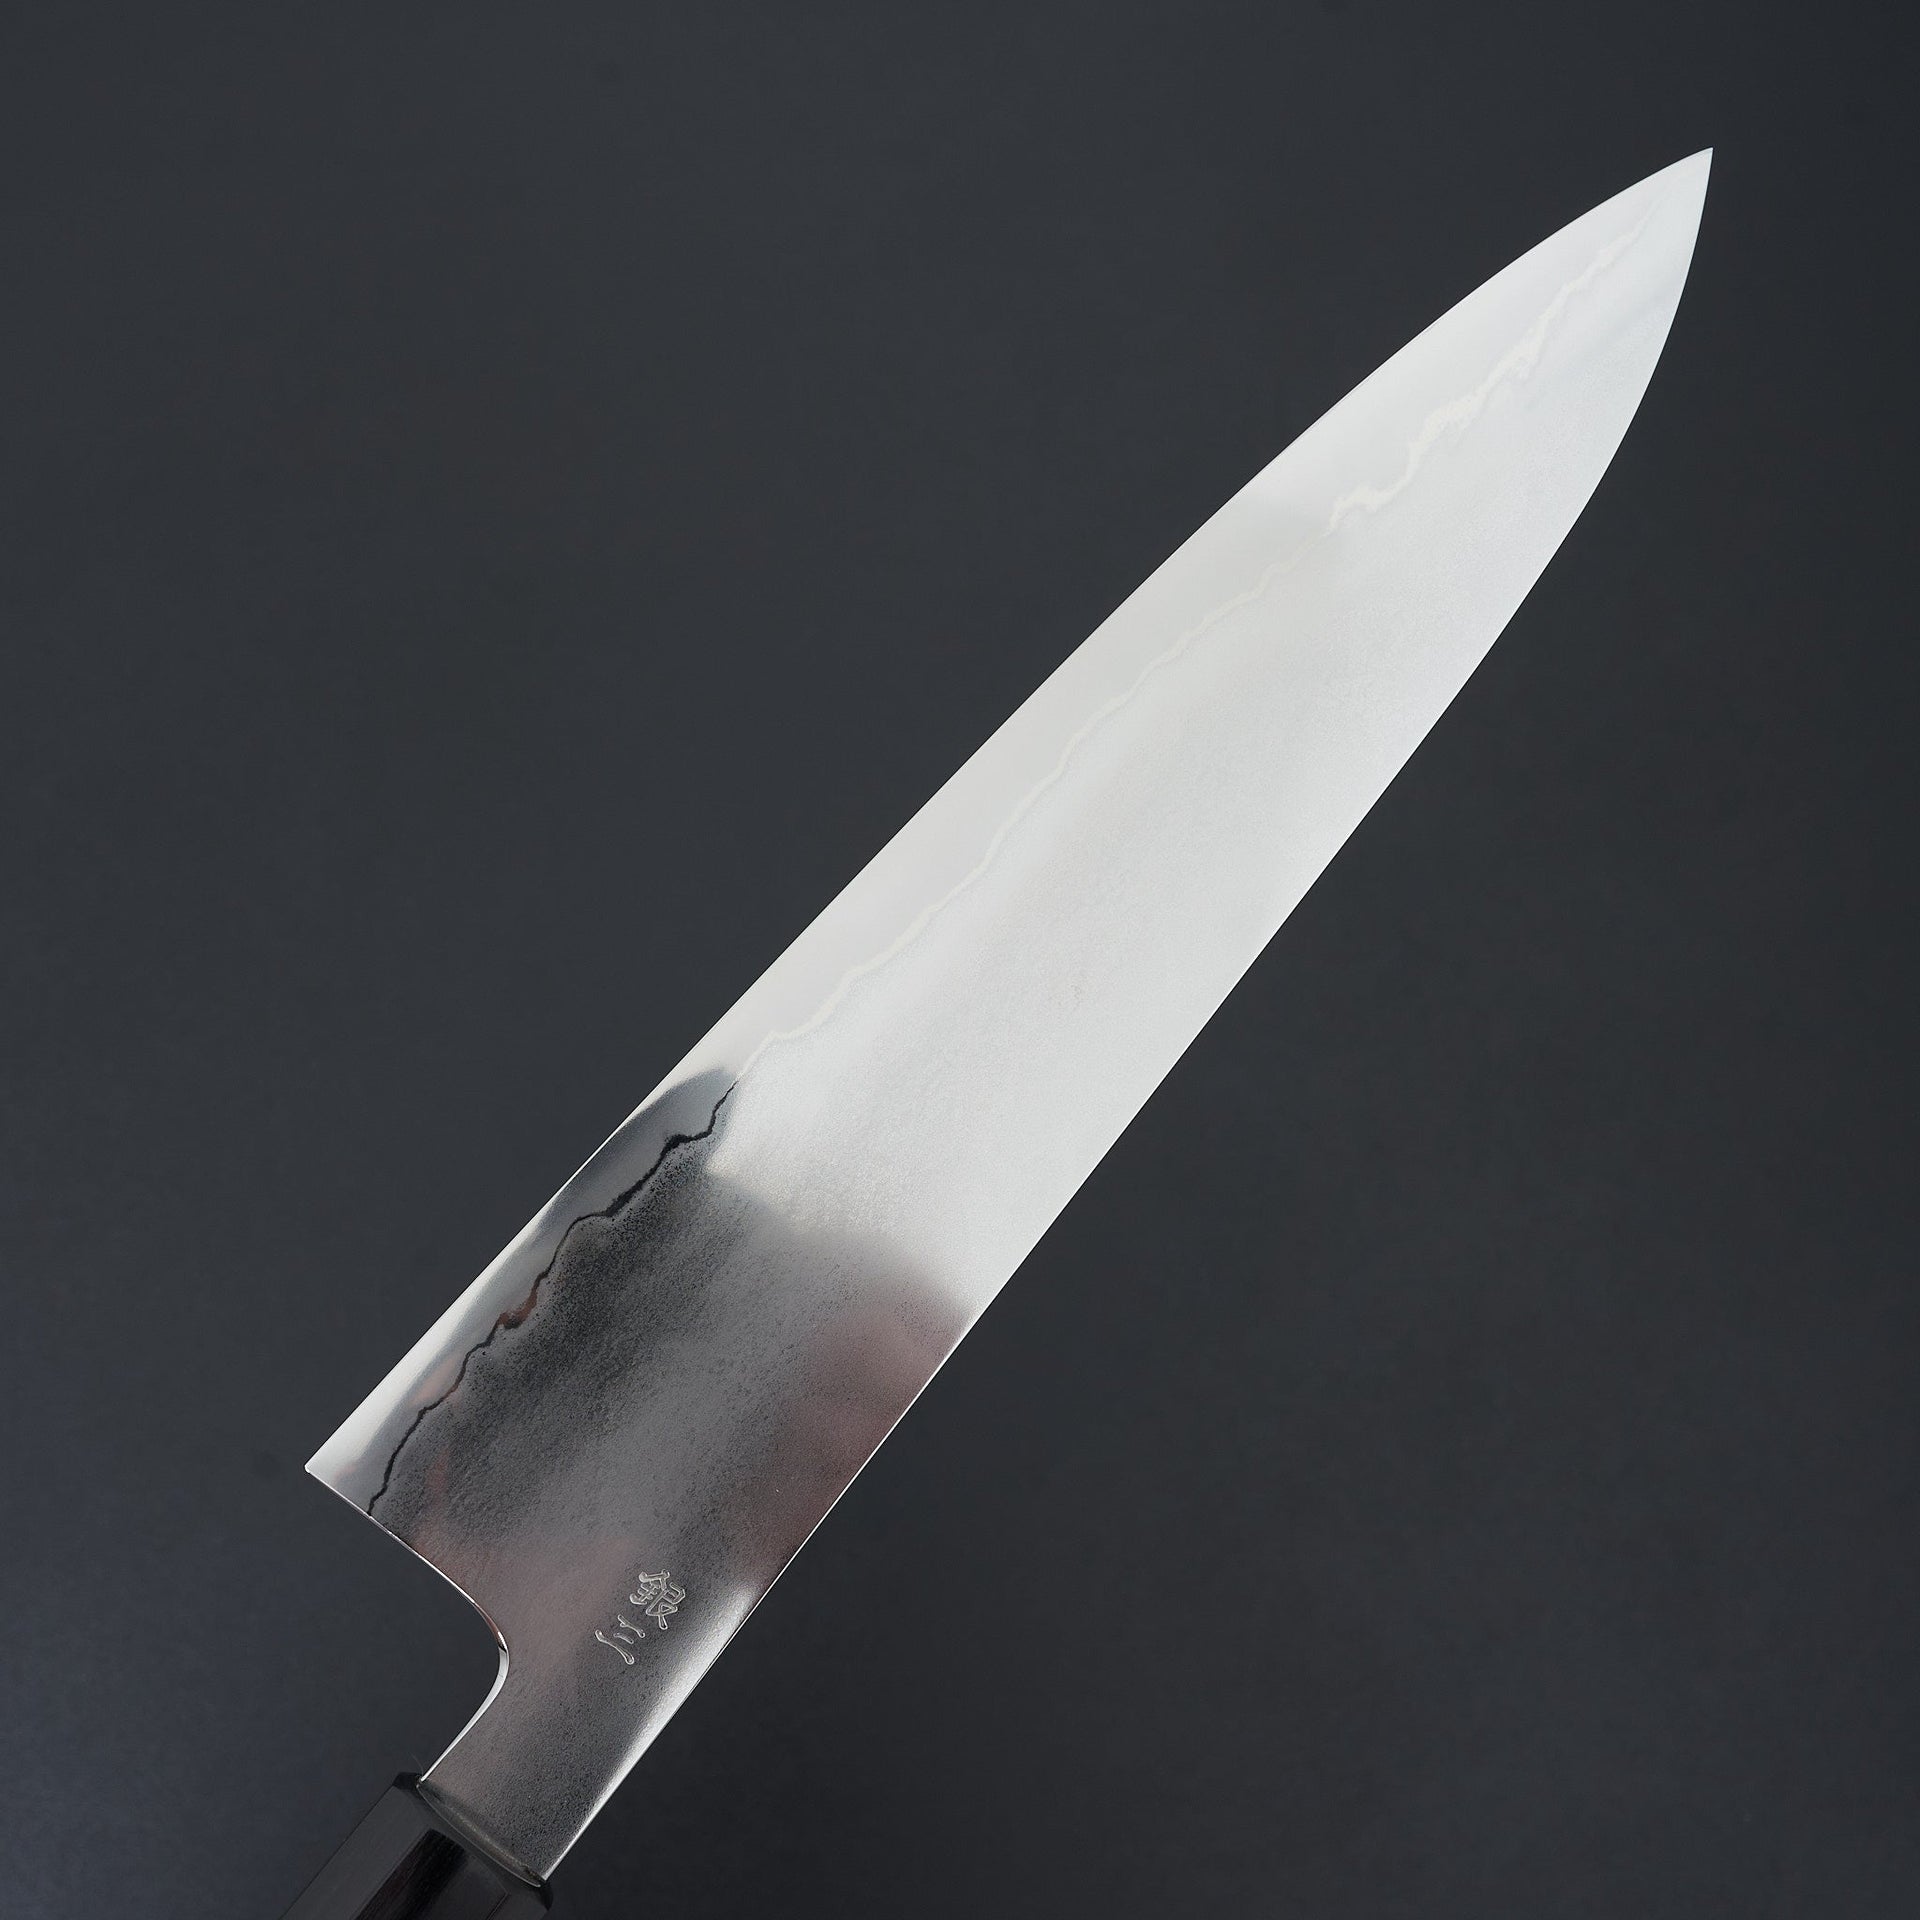 Takada no Hamono Suiboku Rosewood Ginsan Gyuto 270mm-Knife-Takada no Hamono-Carbon Knife Co